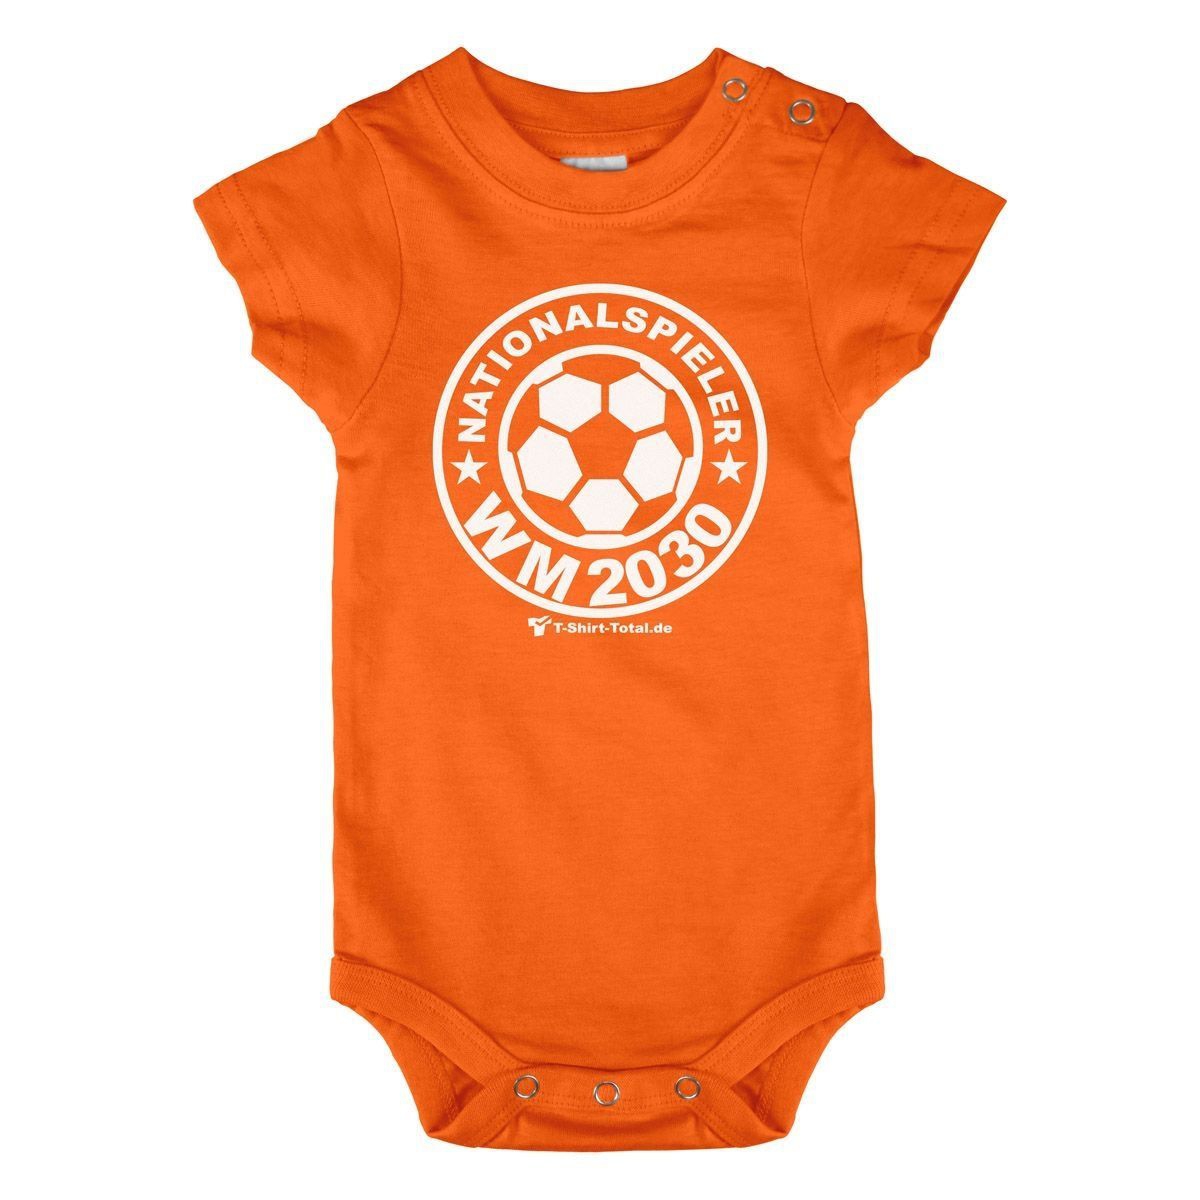 Nationalspieler 2042 Baby Body Kurzarm orange 68 / 74